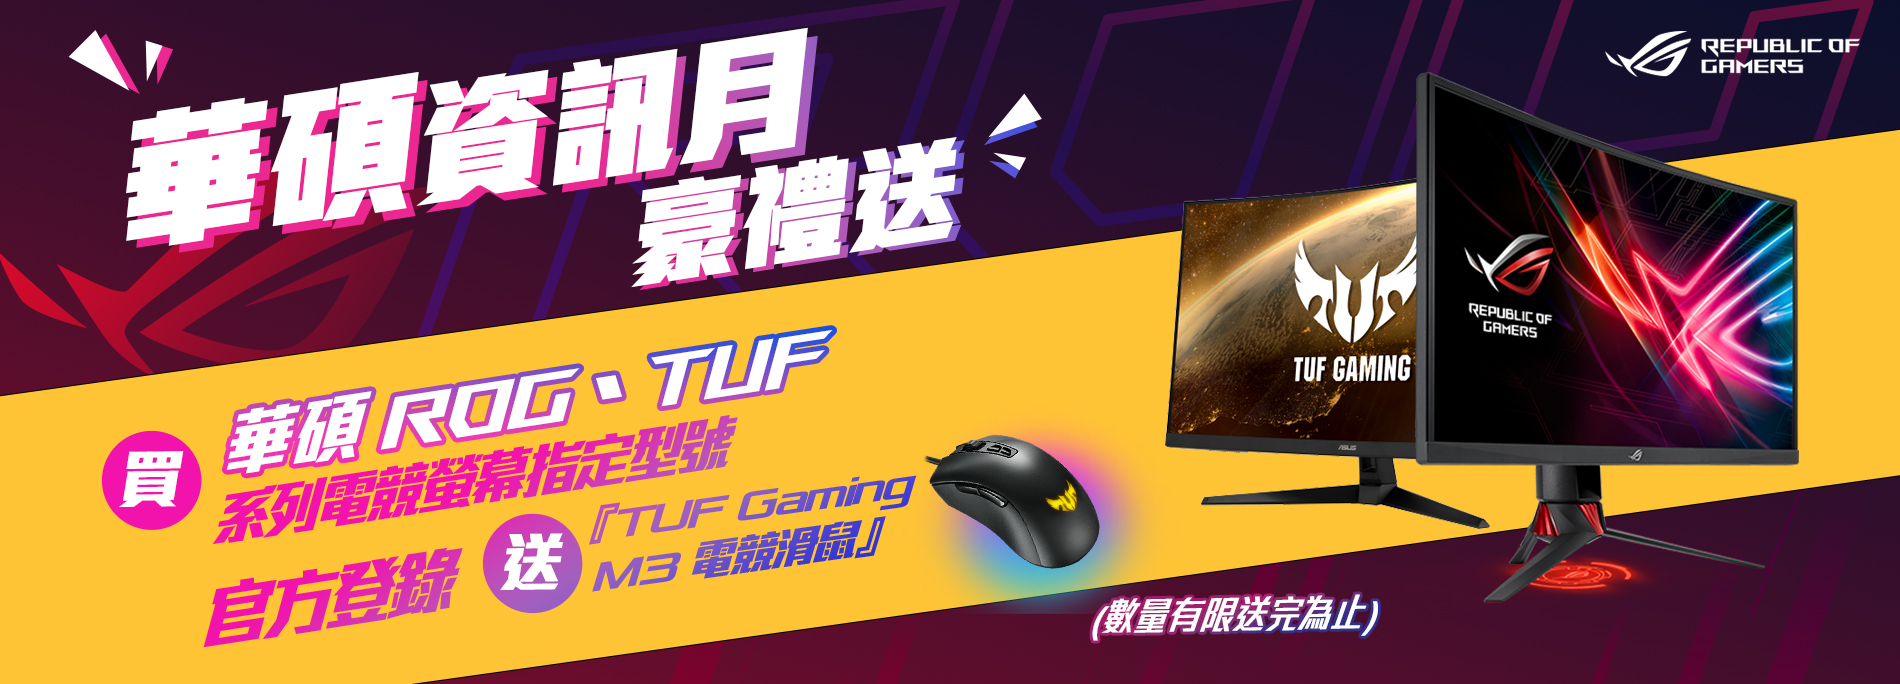 [情報]買ASUS ROG、TUF螢幕登錄送電競滑鼠